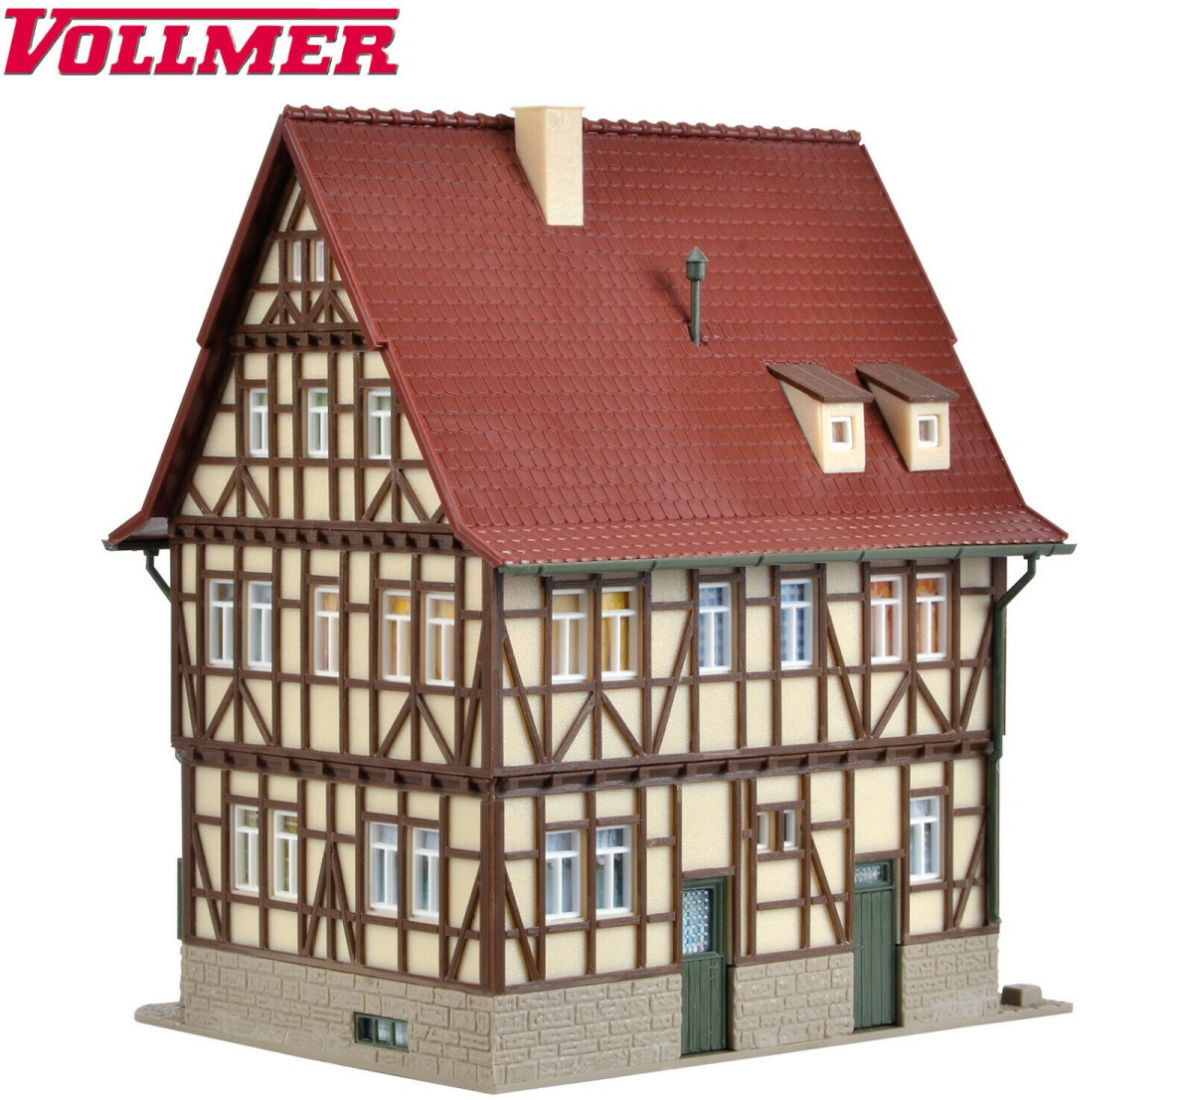 Vollmer H0 43730 Bauernhaus mit Hoftor 